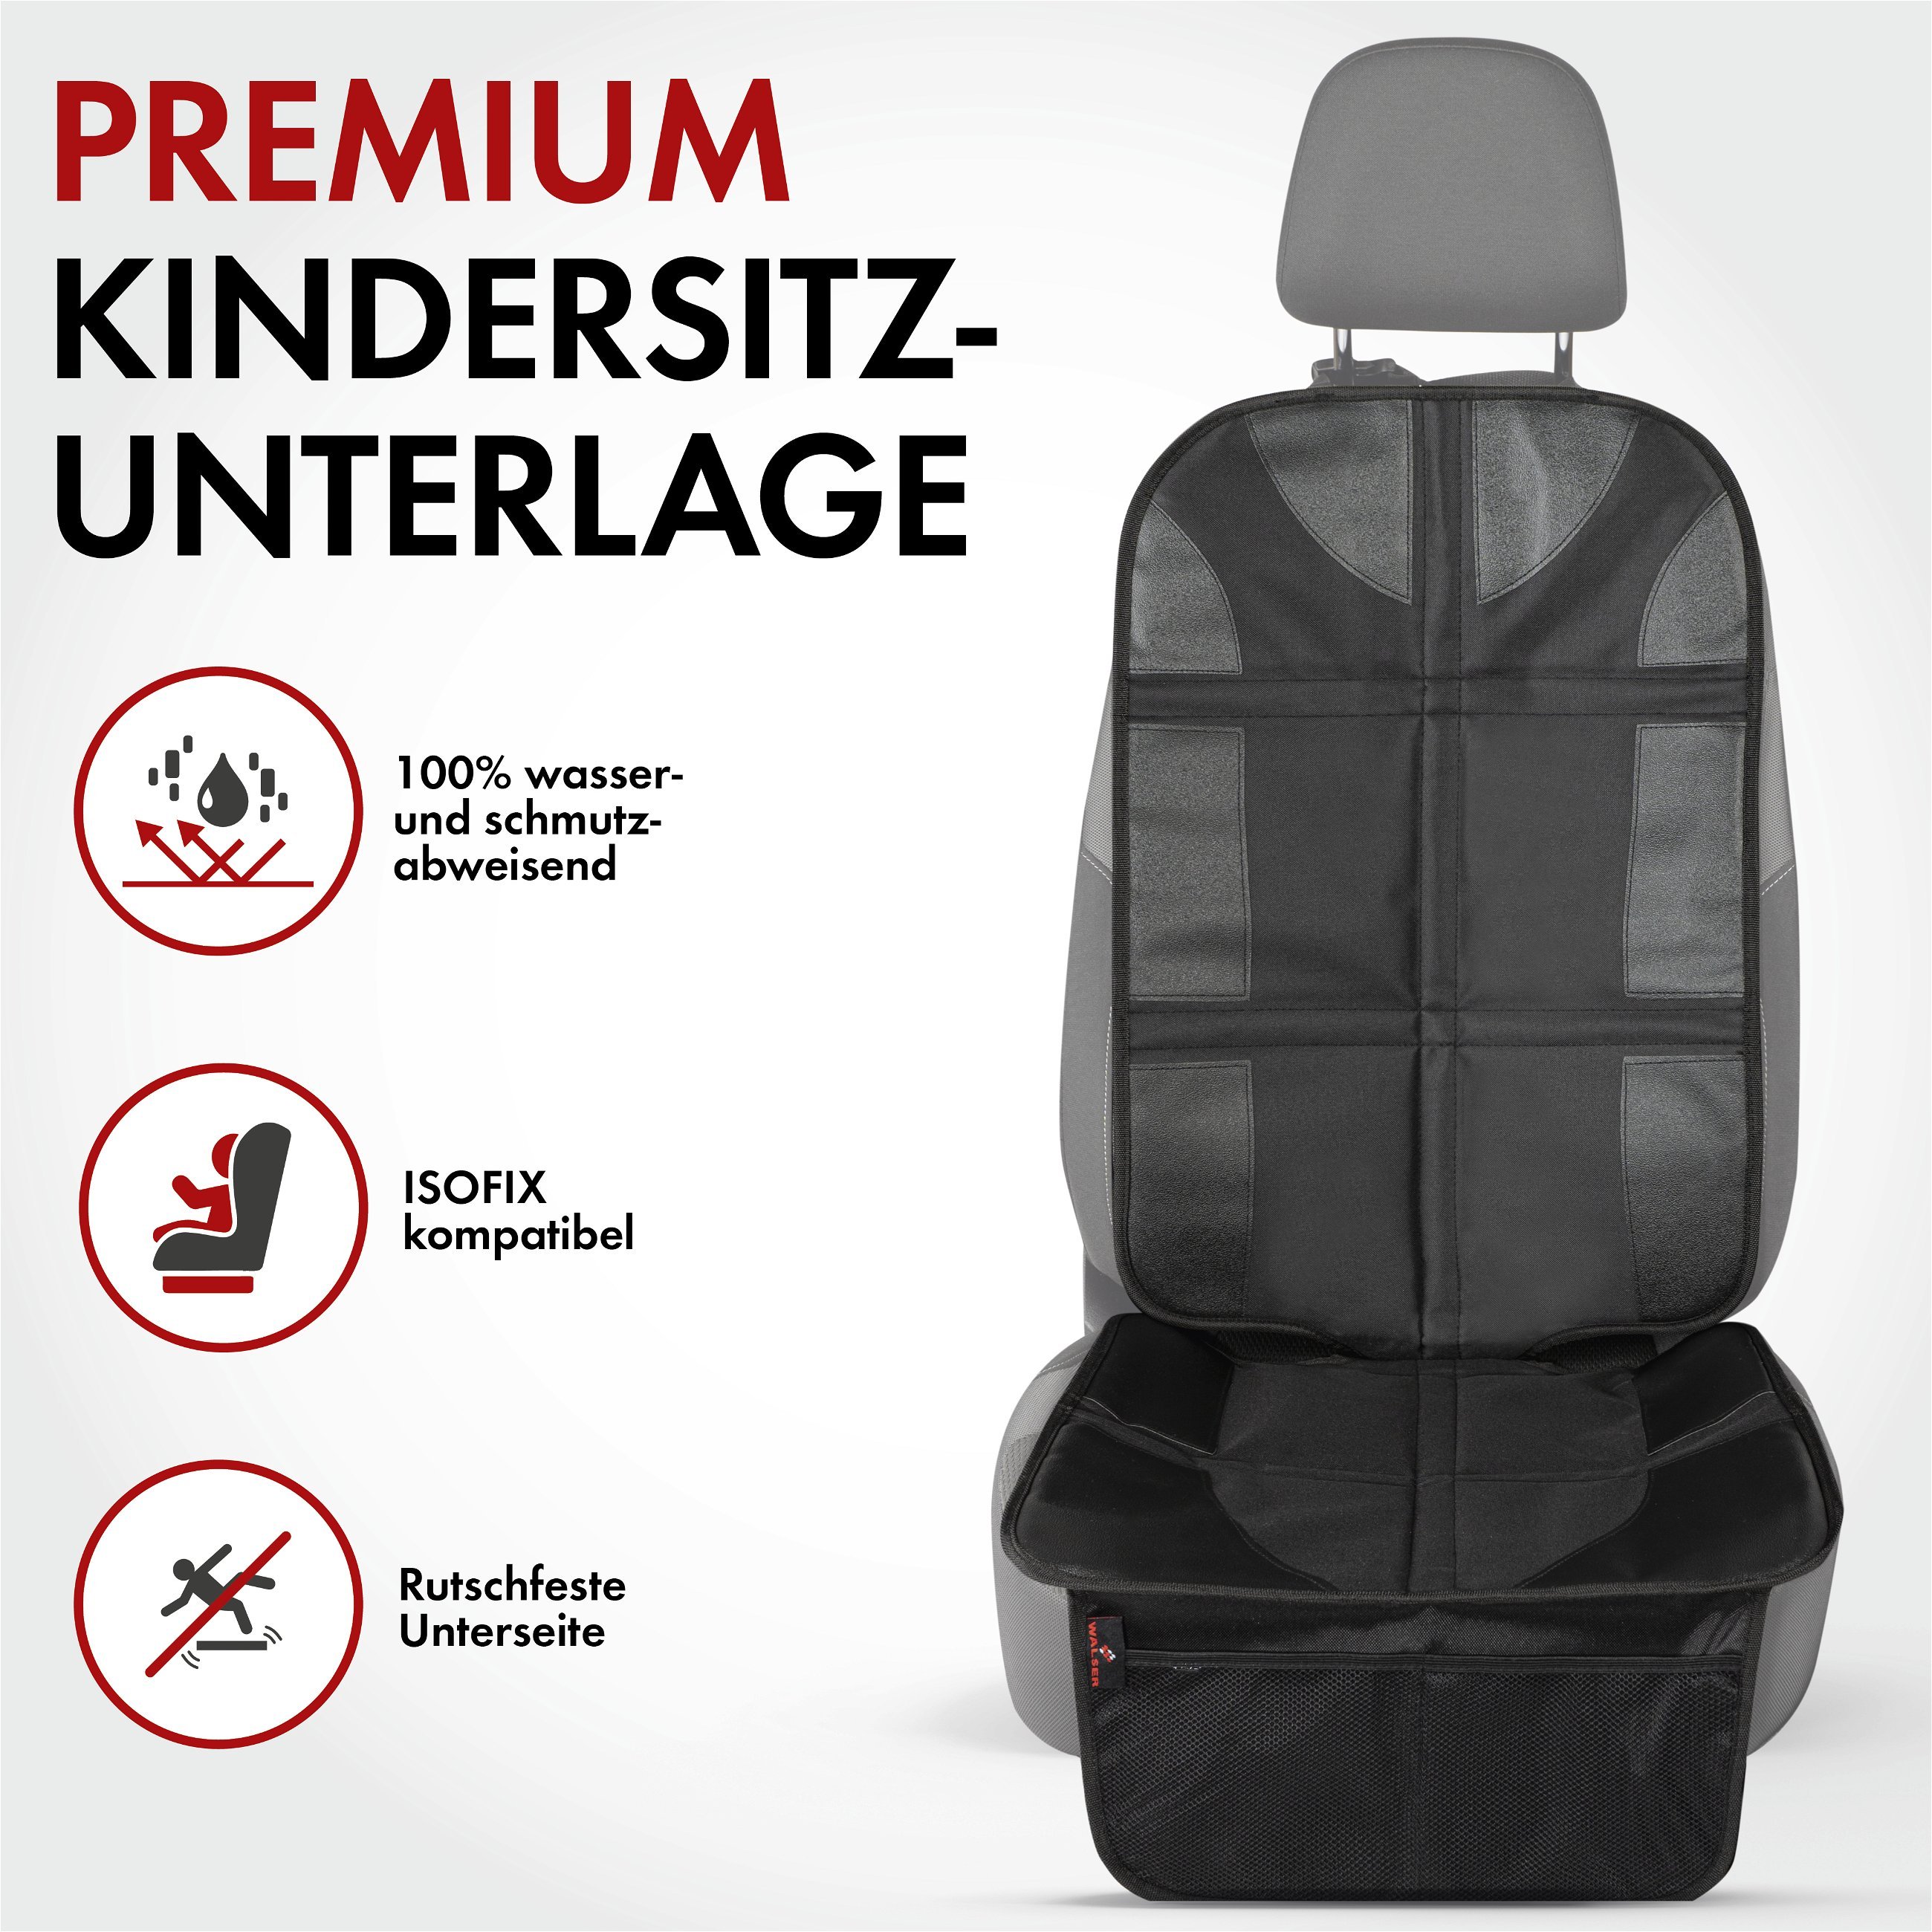 Kindersitzunterlage George Premium XL, Auto-Schutzunterlage, Sitzschoner Kindersitz schwarz